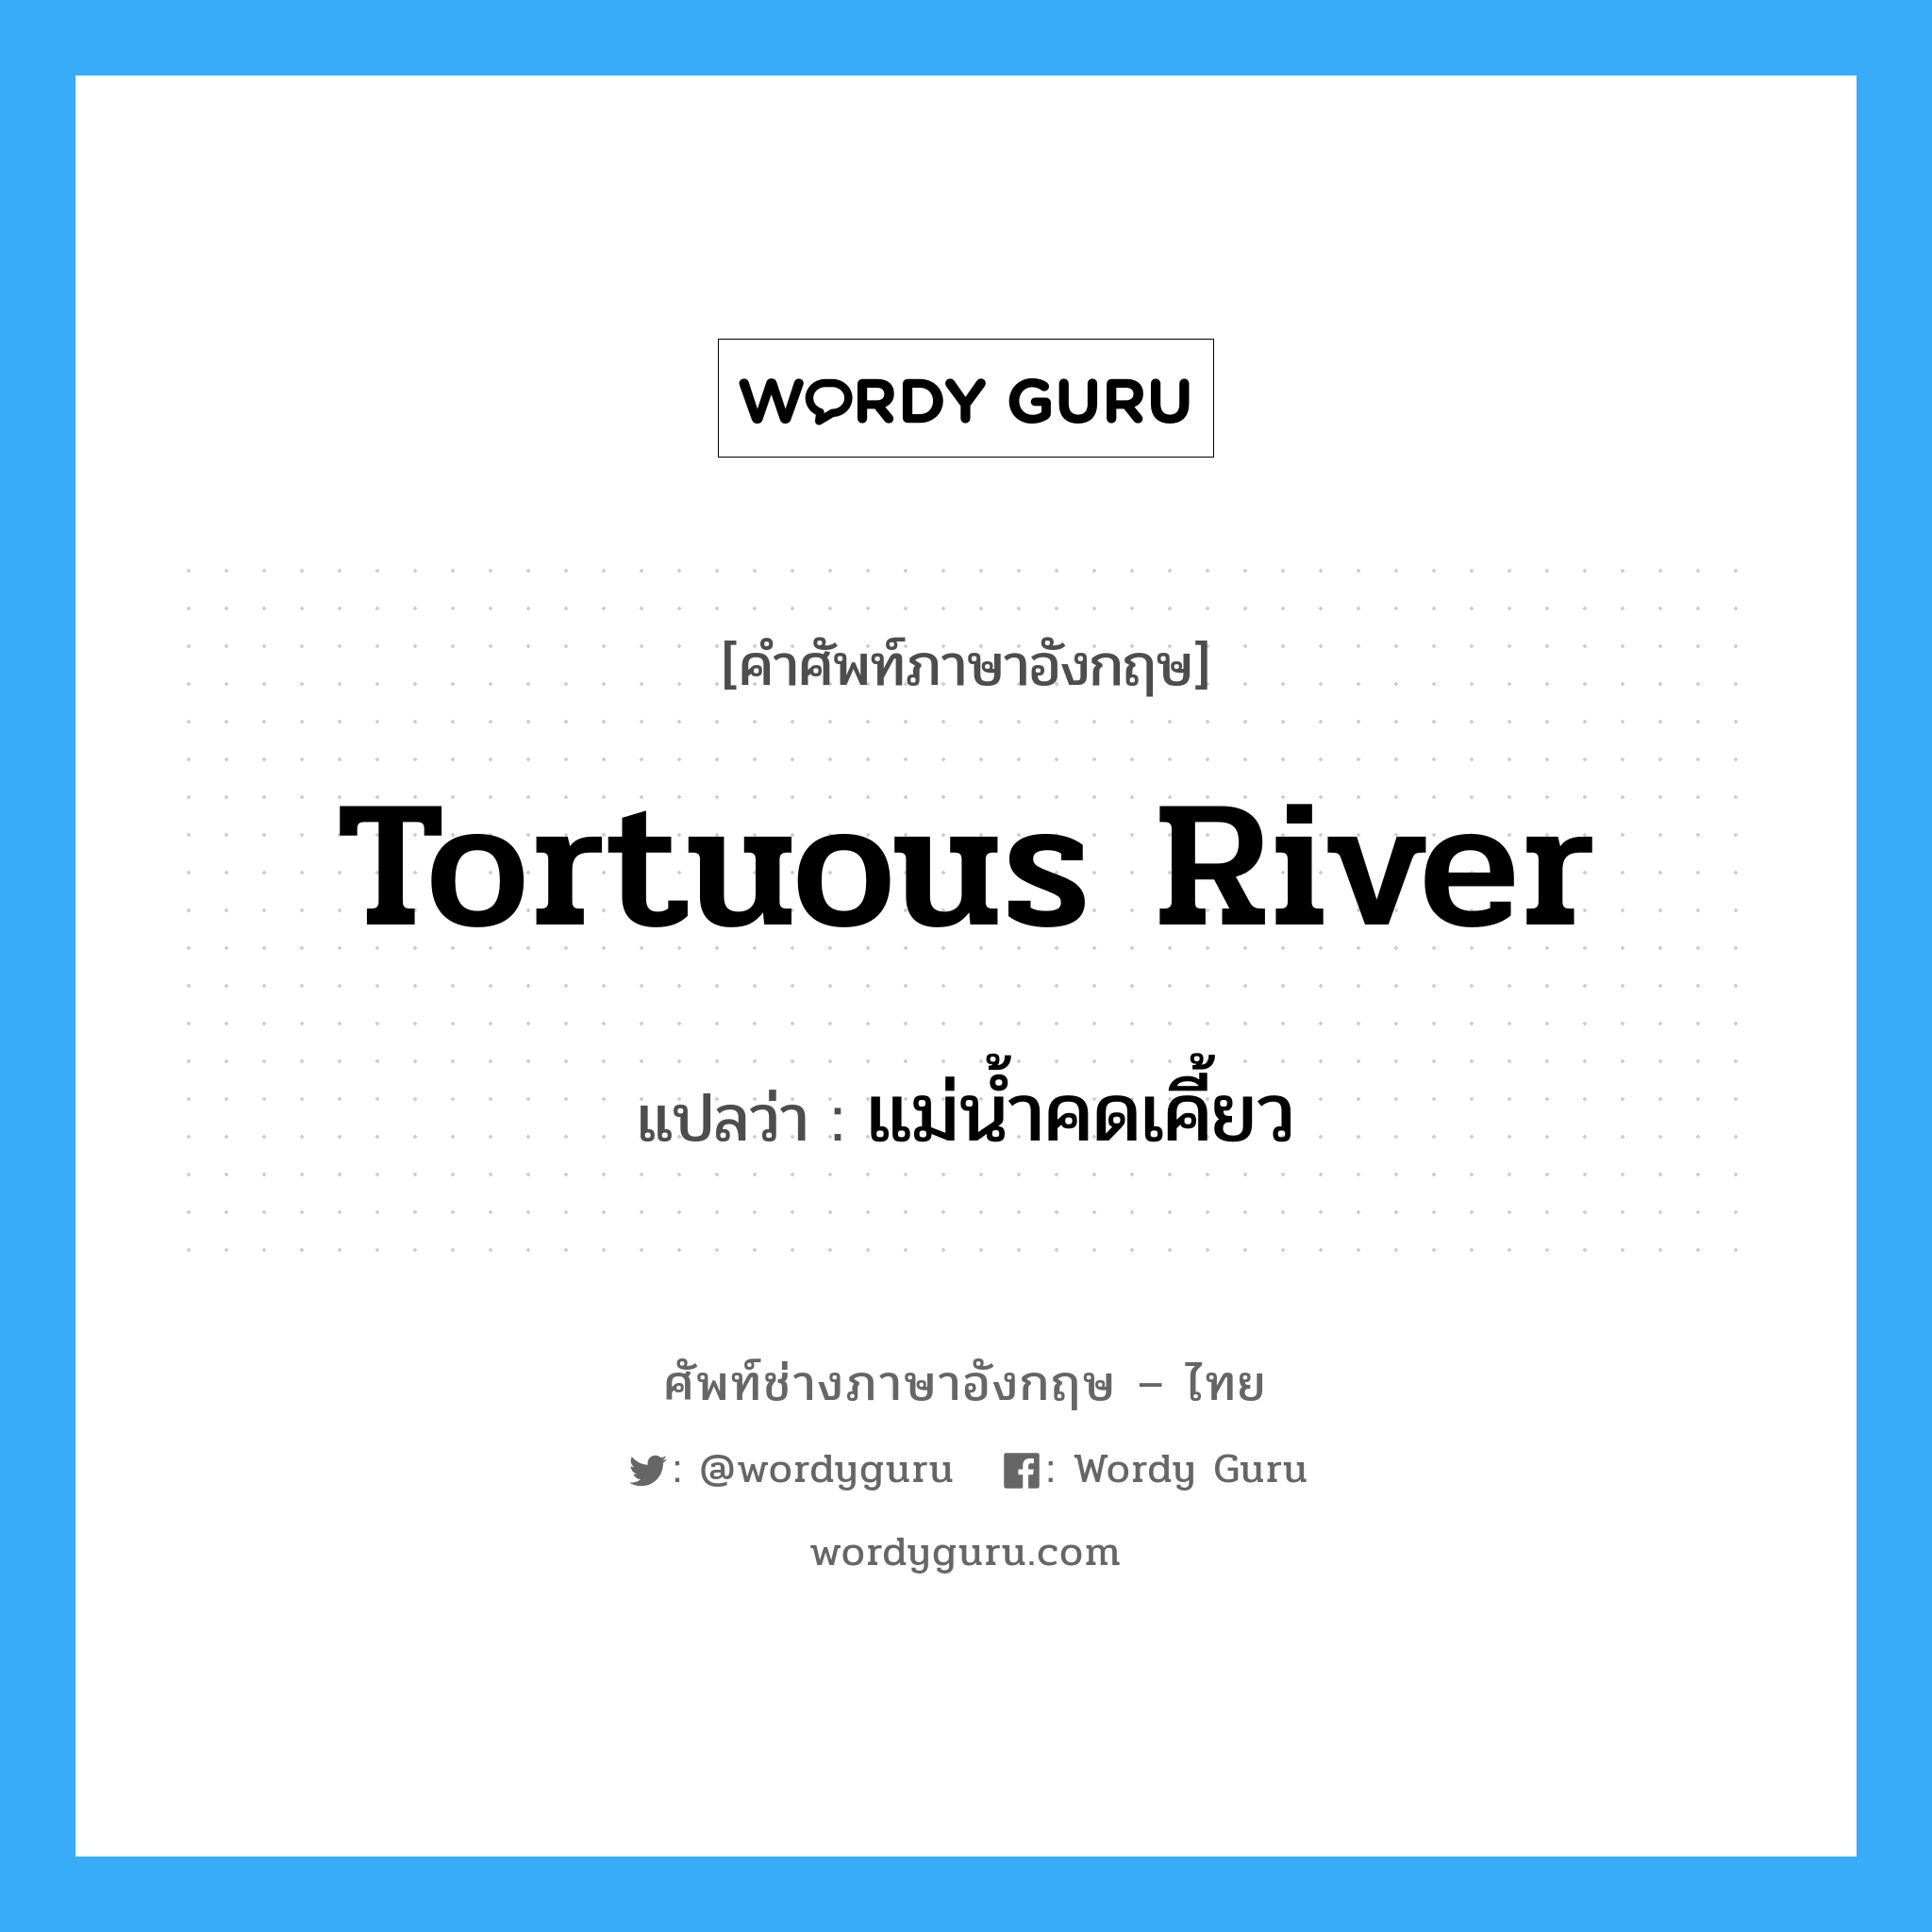 tortuous river แปลว่า?, คำศัพท์ช่างภาษาอังกฤษ - ไทย tortuous river คำศัพท์ภาษาอังกฤษ tortuous river แปลว่า แม่น้ำคดเคี้ยว